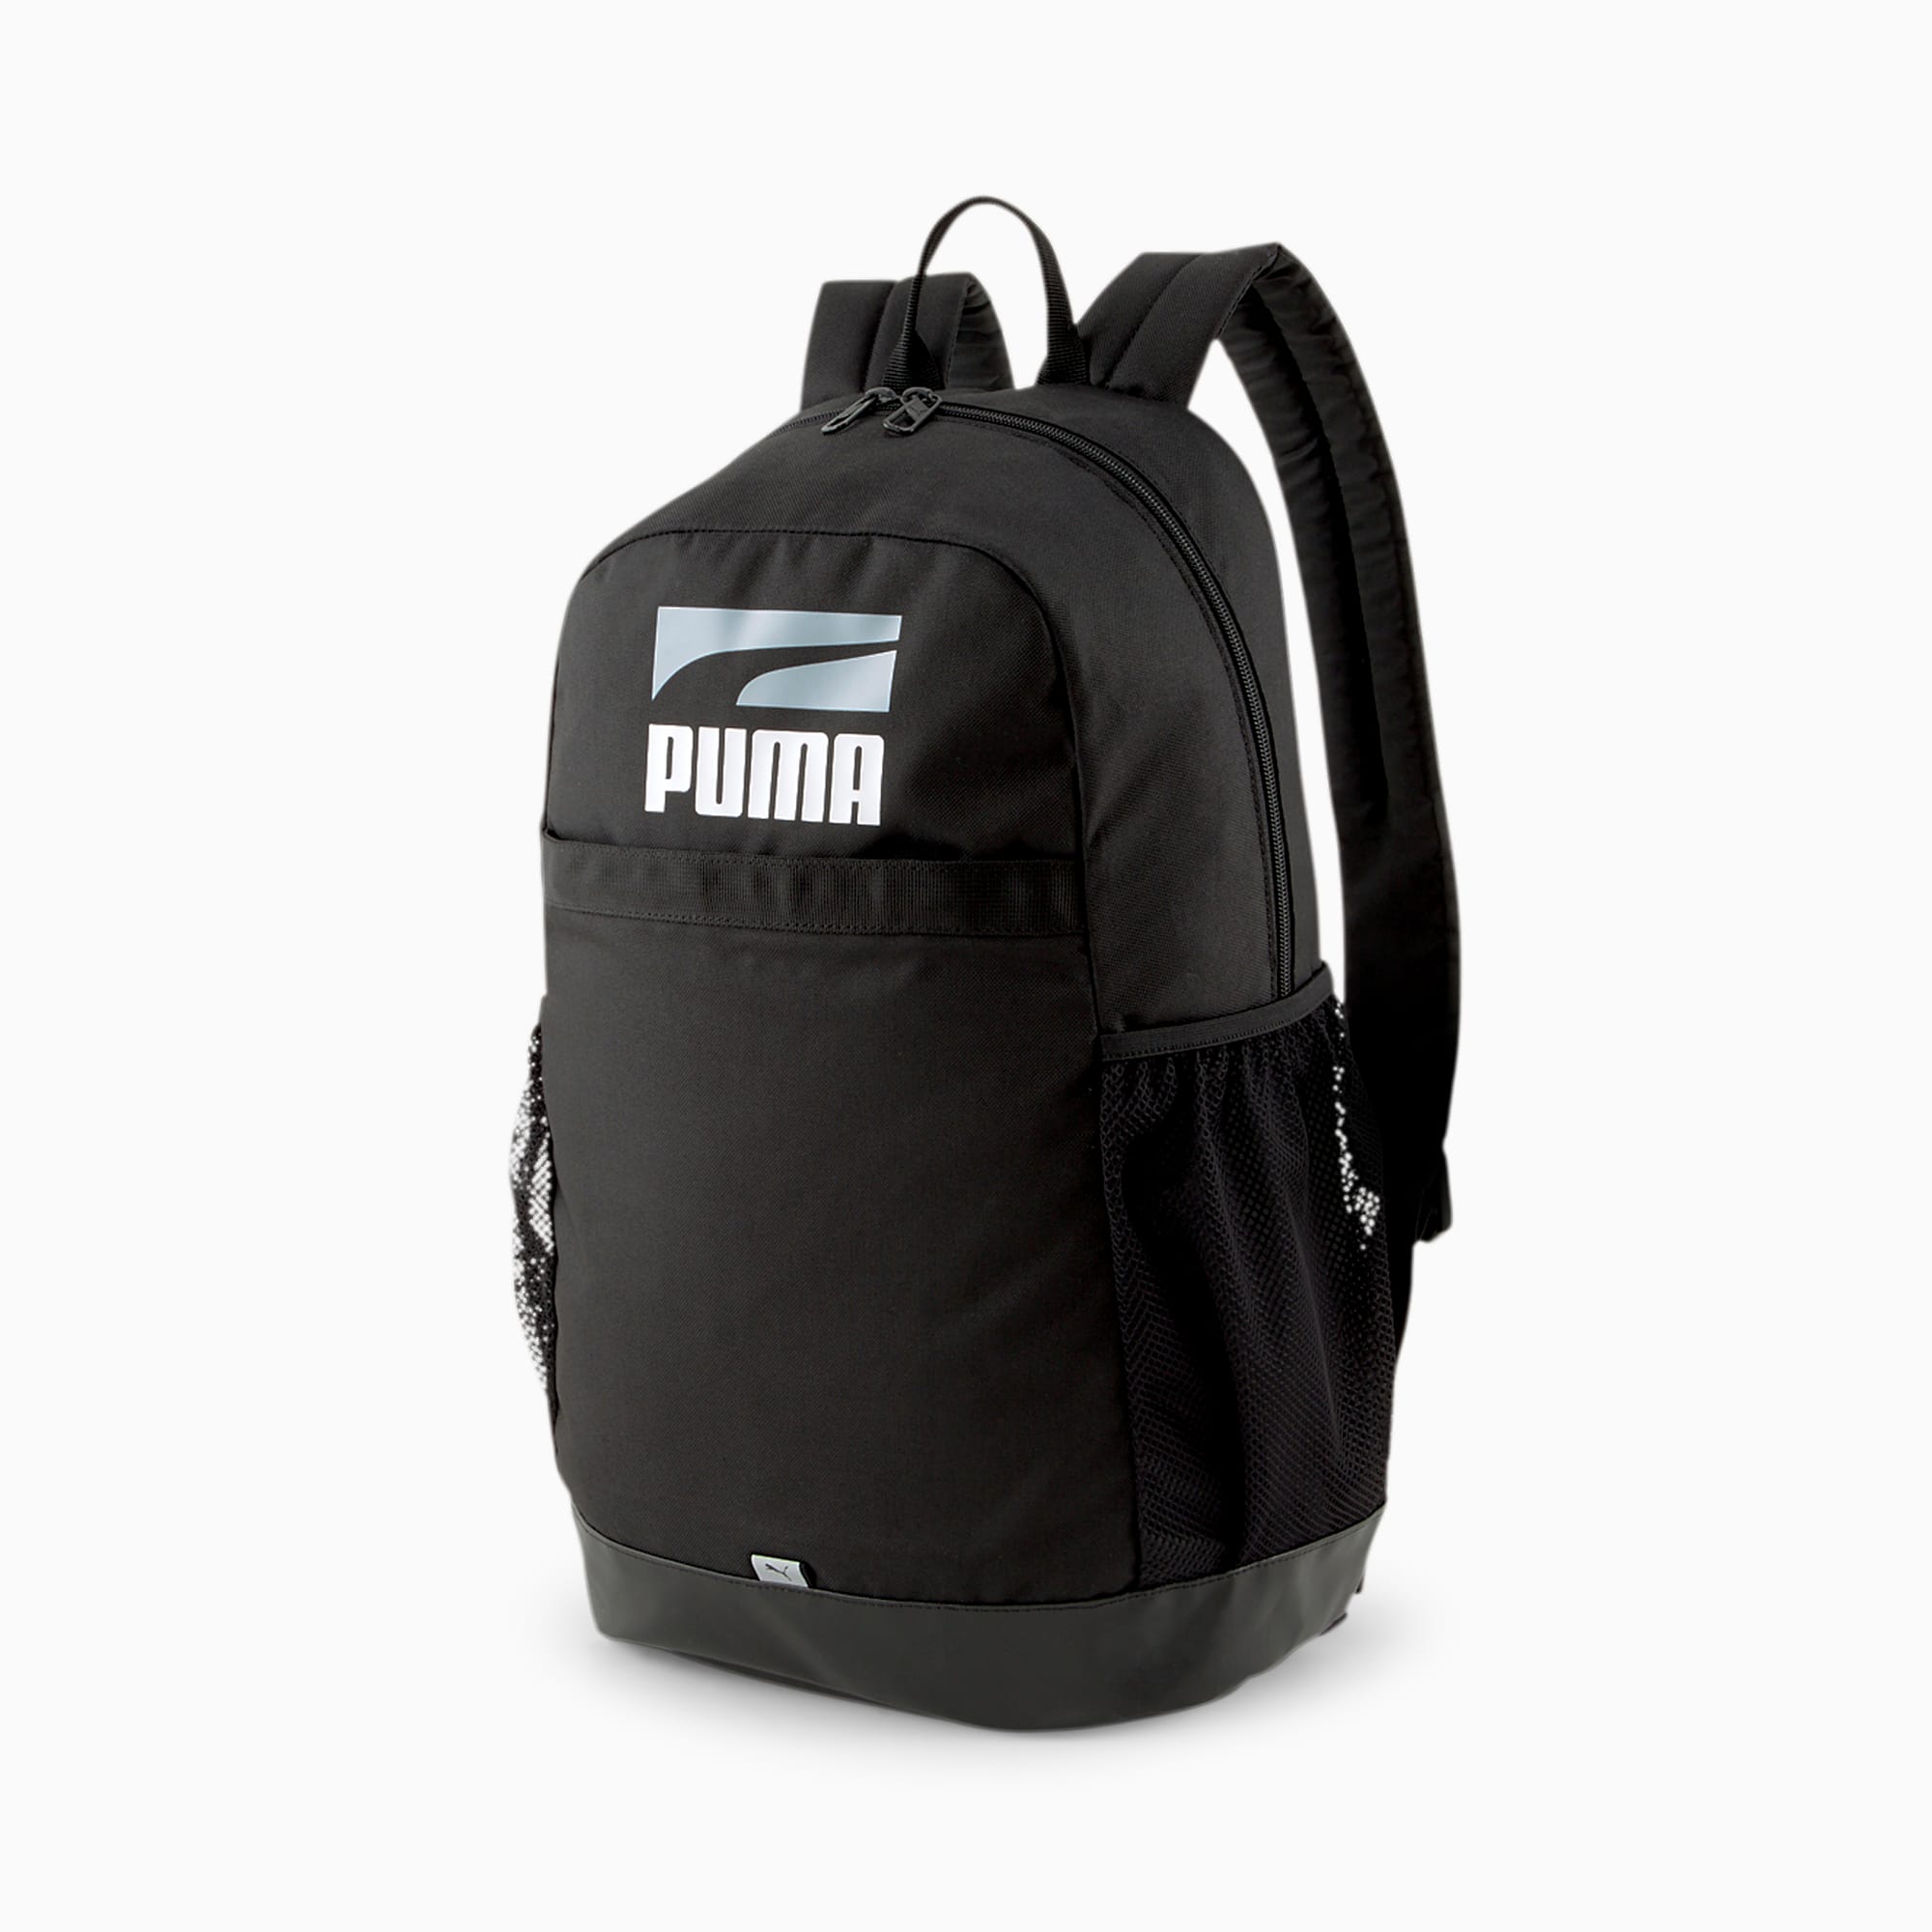 Plus | PUMA Backpack II